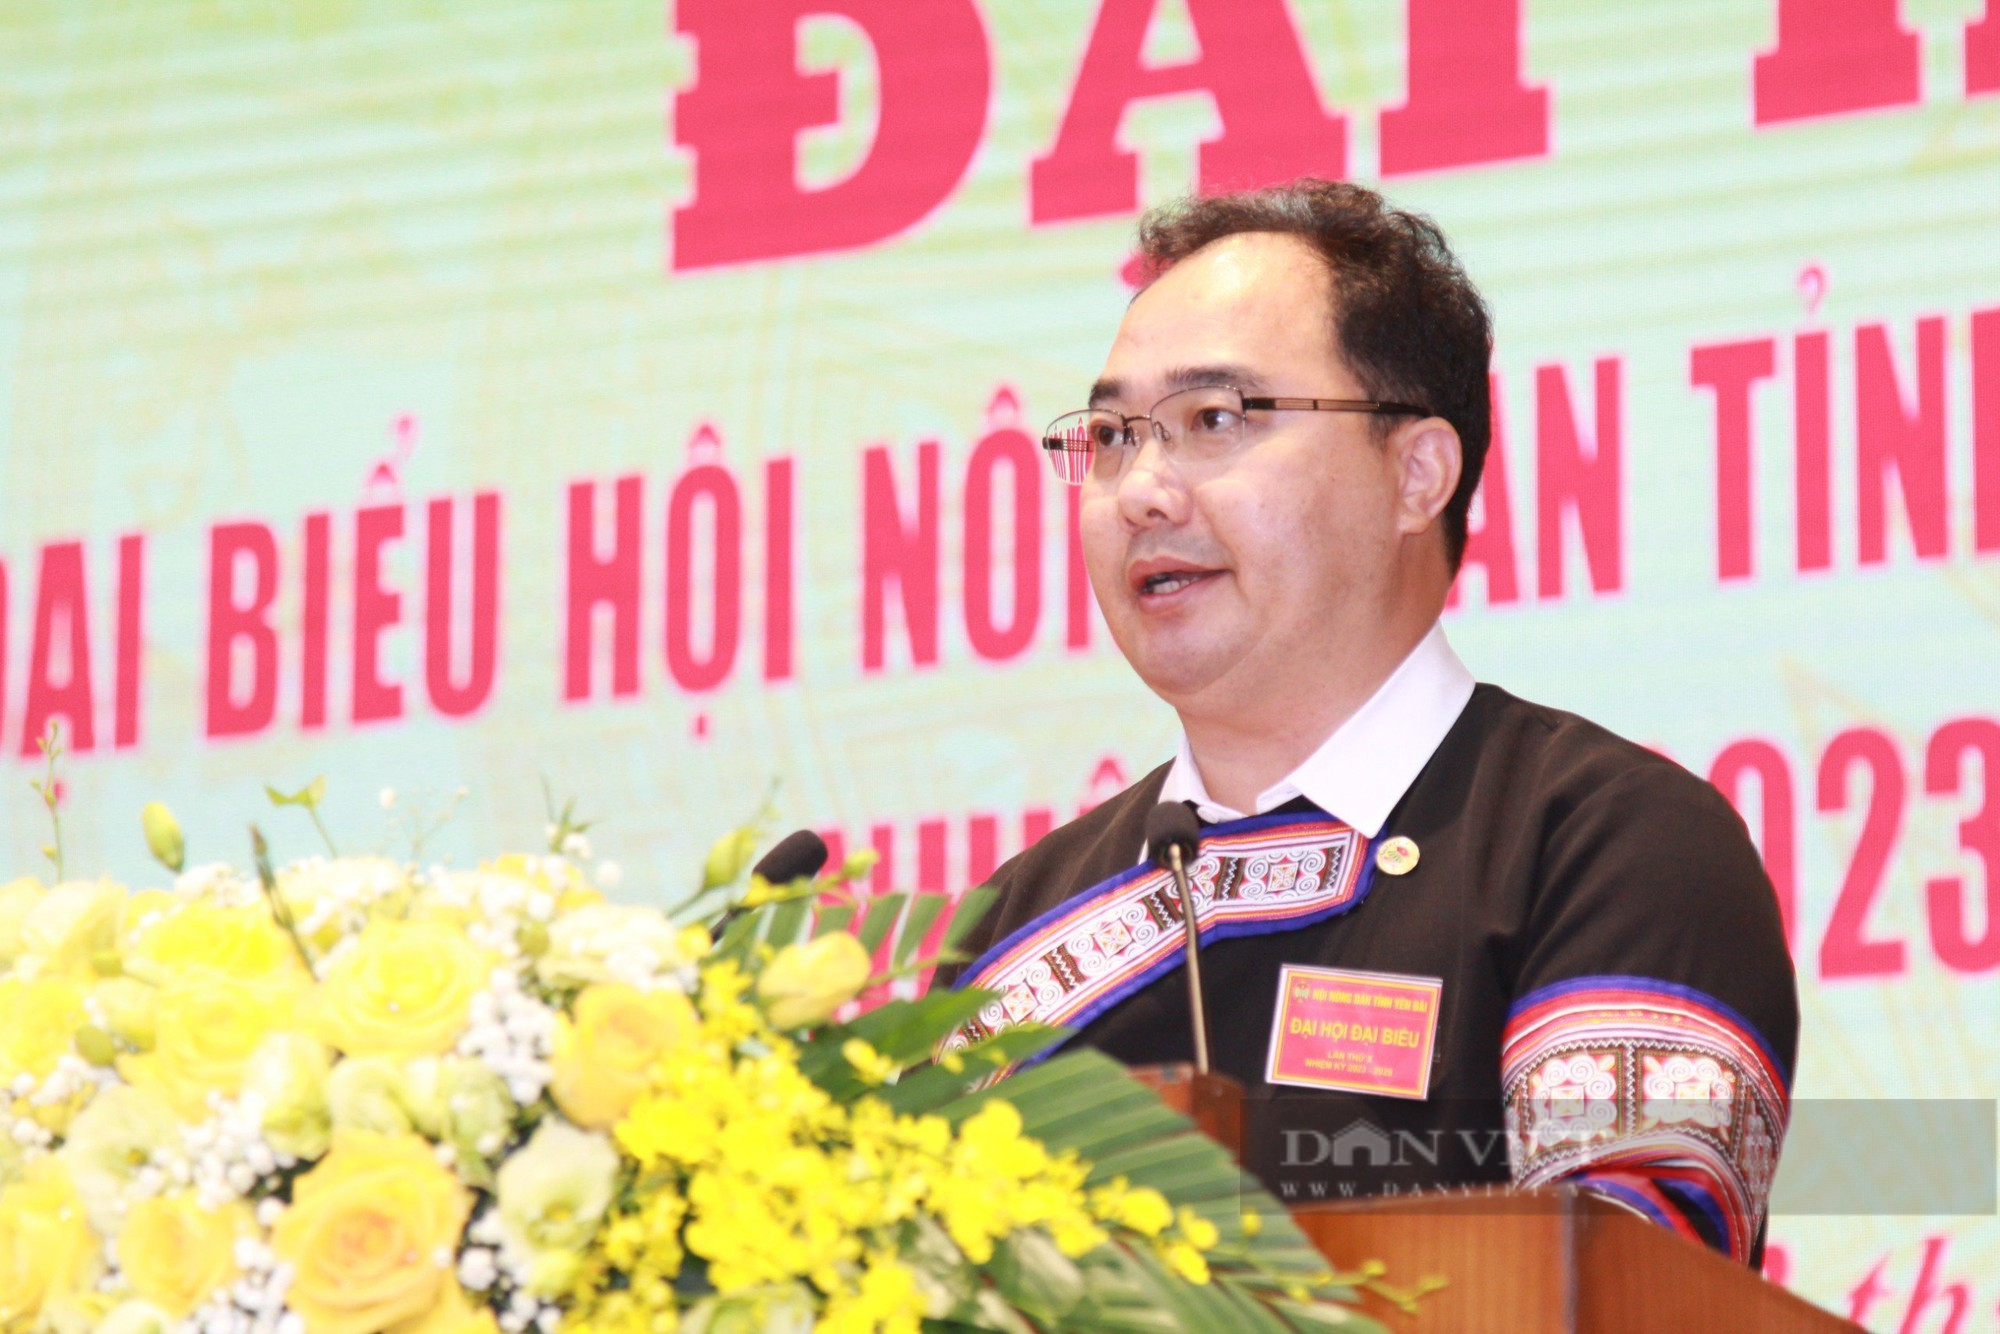 Phó Chủ tịch Hội NDVN Bùi Thị Thơm: Hội Nông dân tỉnh Yên Bái vận động hội viên phát huy bản sắc dân tộc - Ảnh 6.